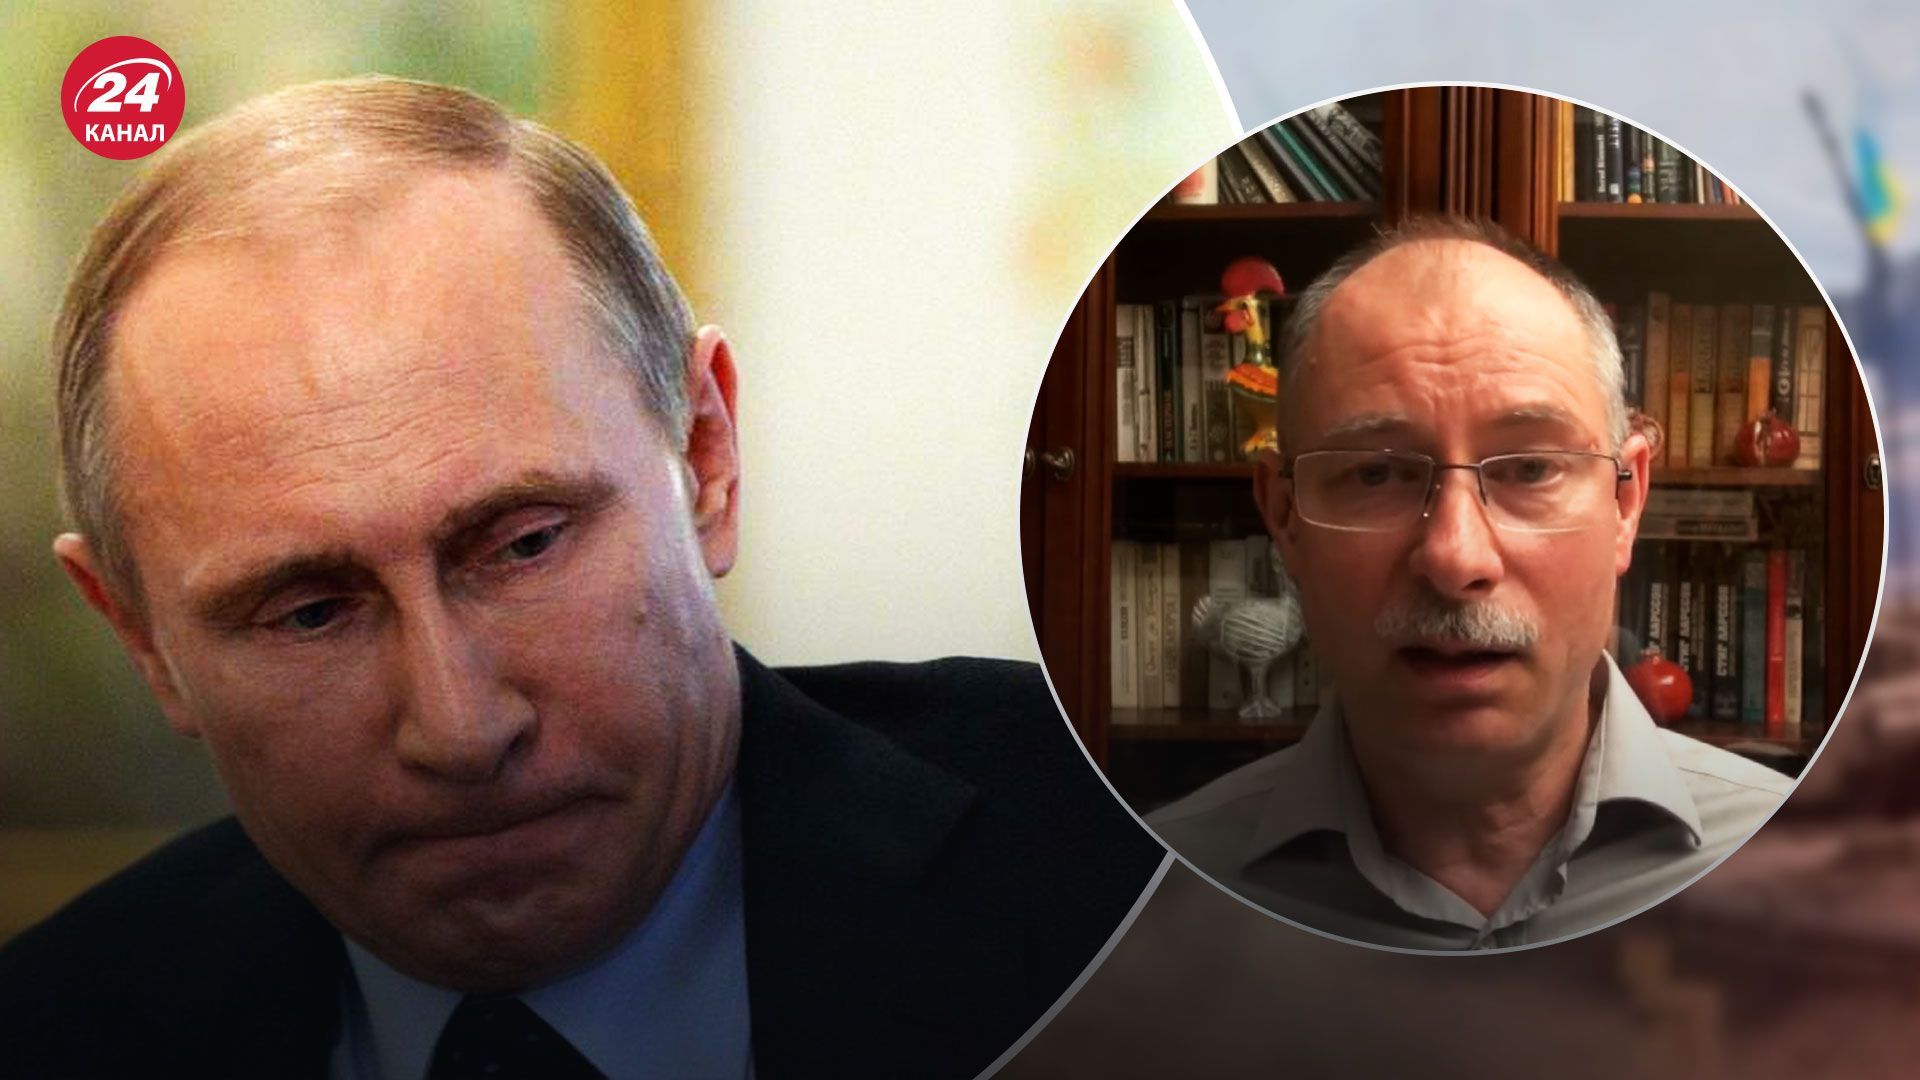 Диктатура Путина может упасть от своей абсурдности